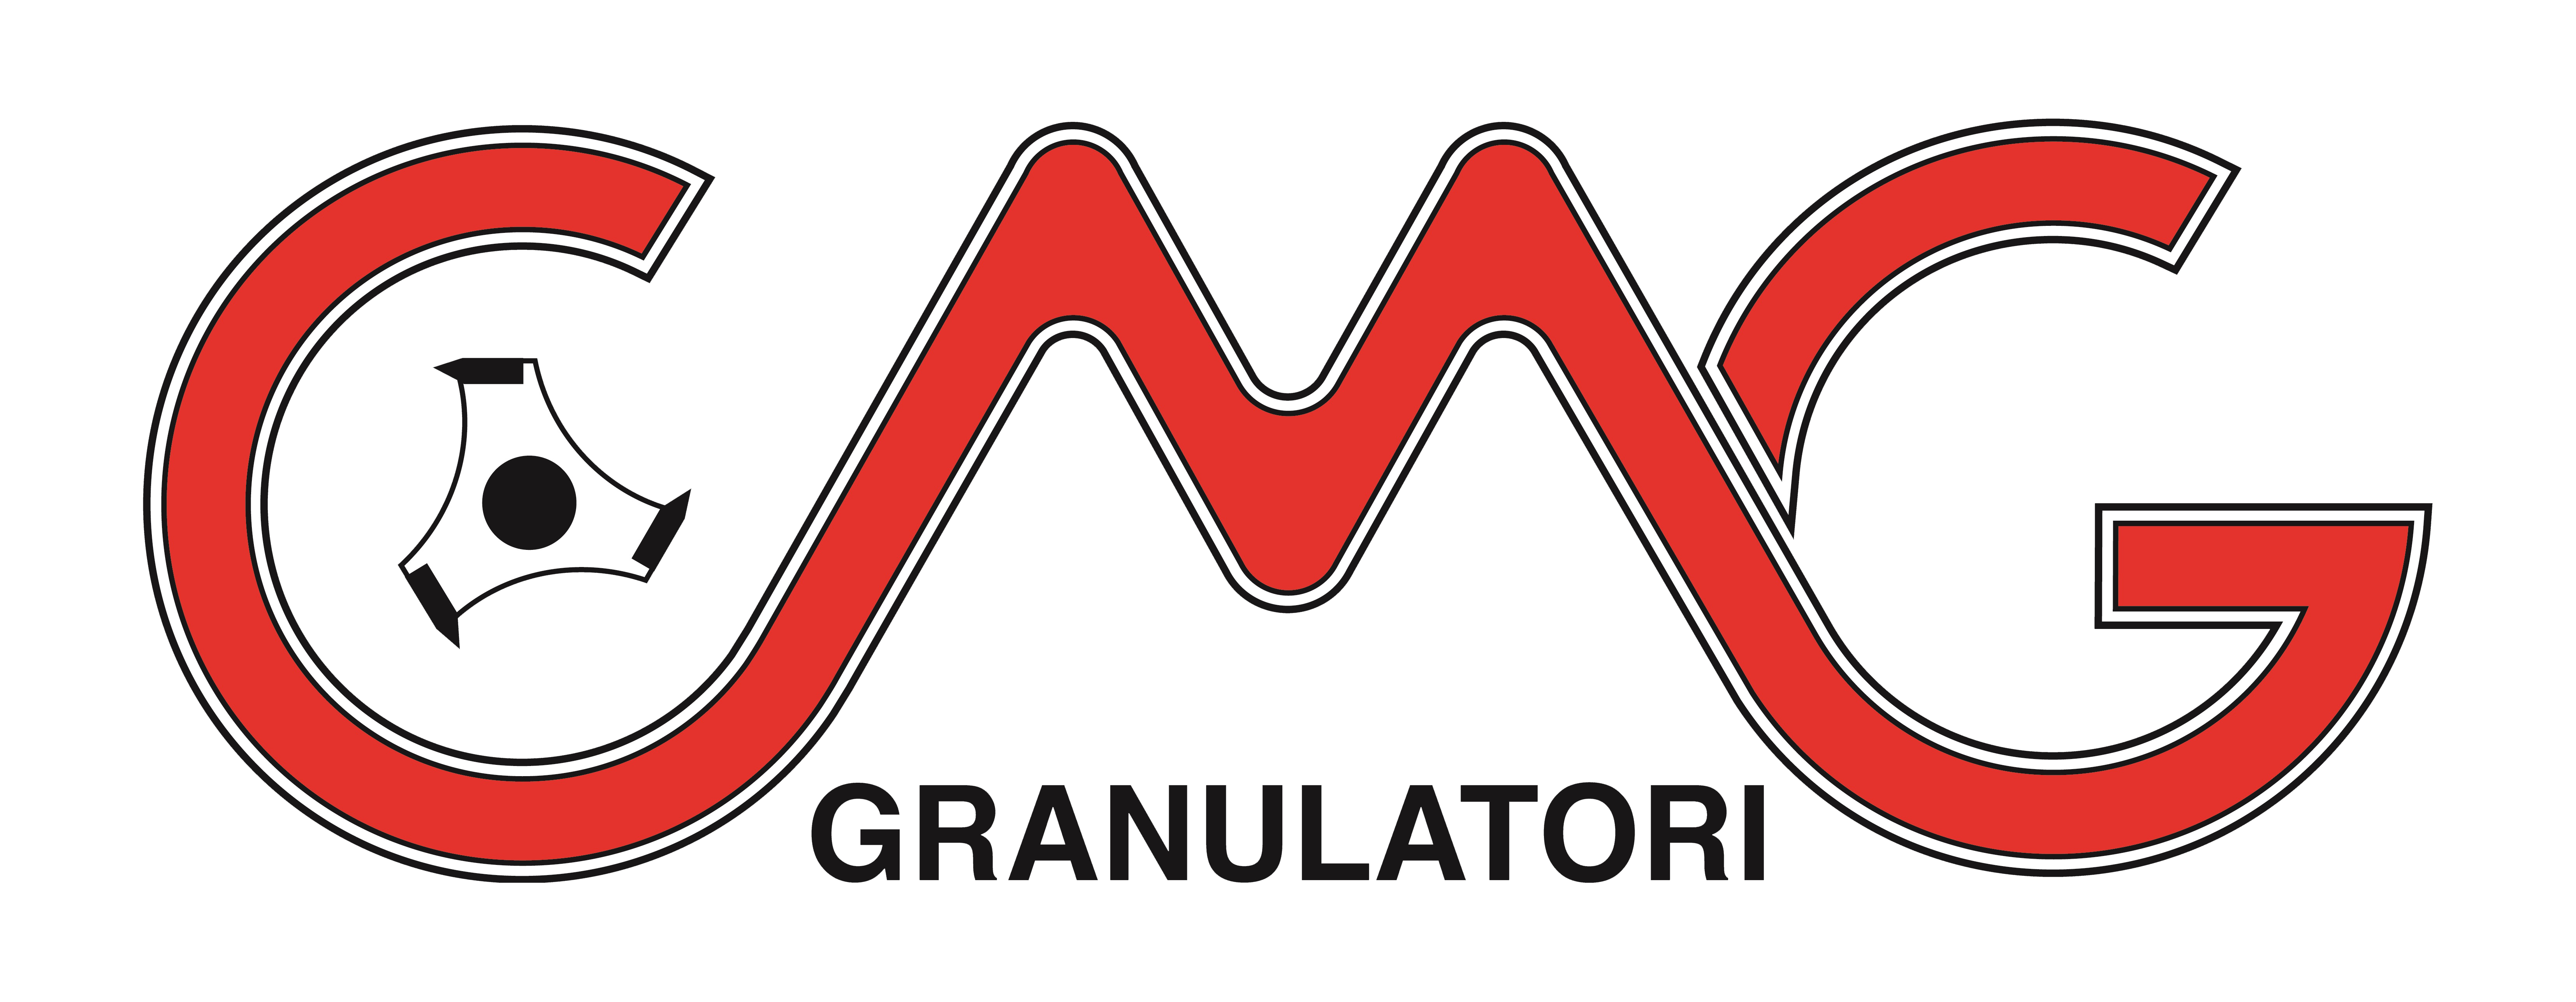 C.M.G. Granulators